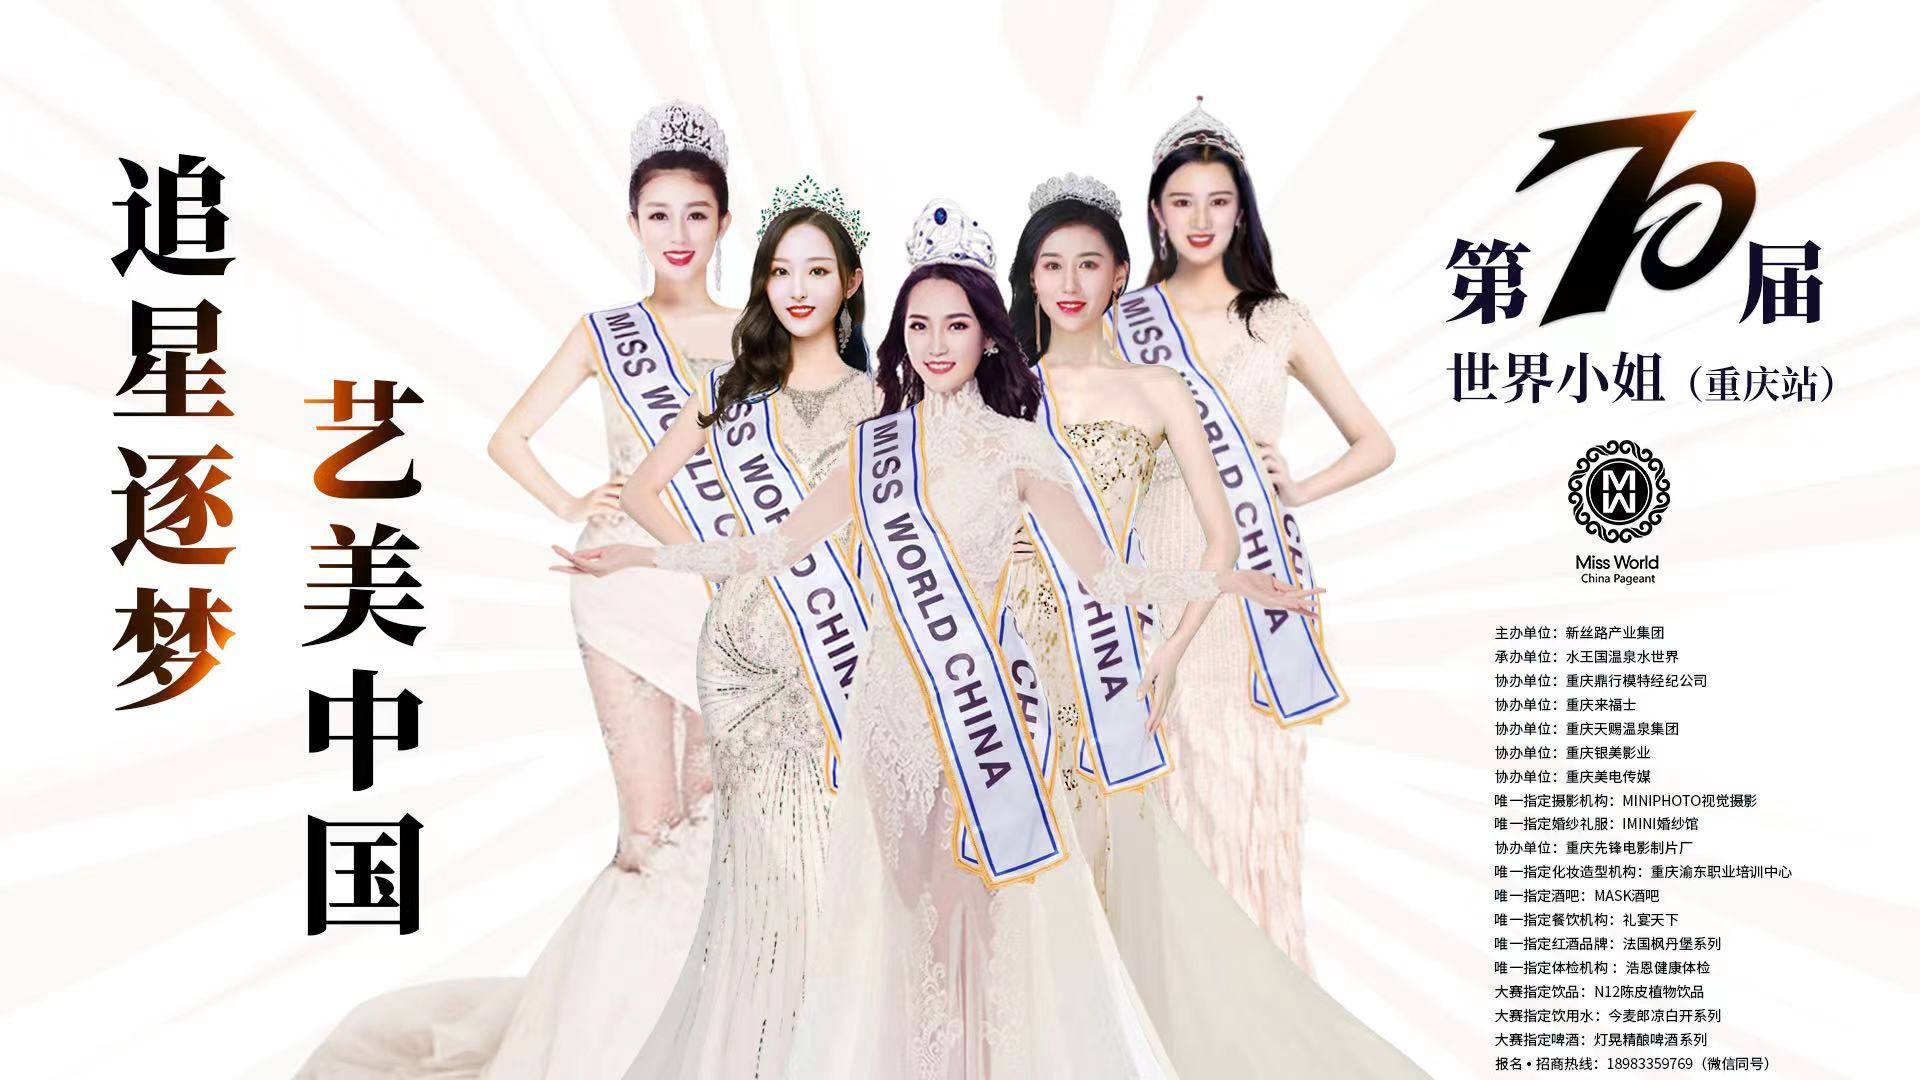 第70届世界小姐大赛中国时尚周talent show重庆赛区即将开启